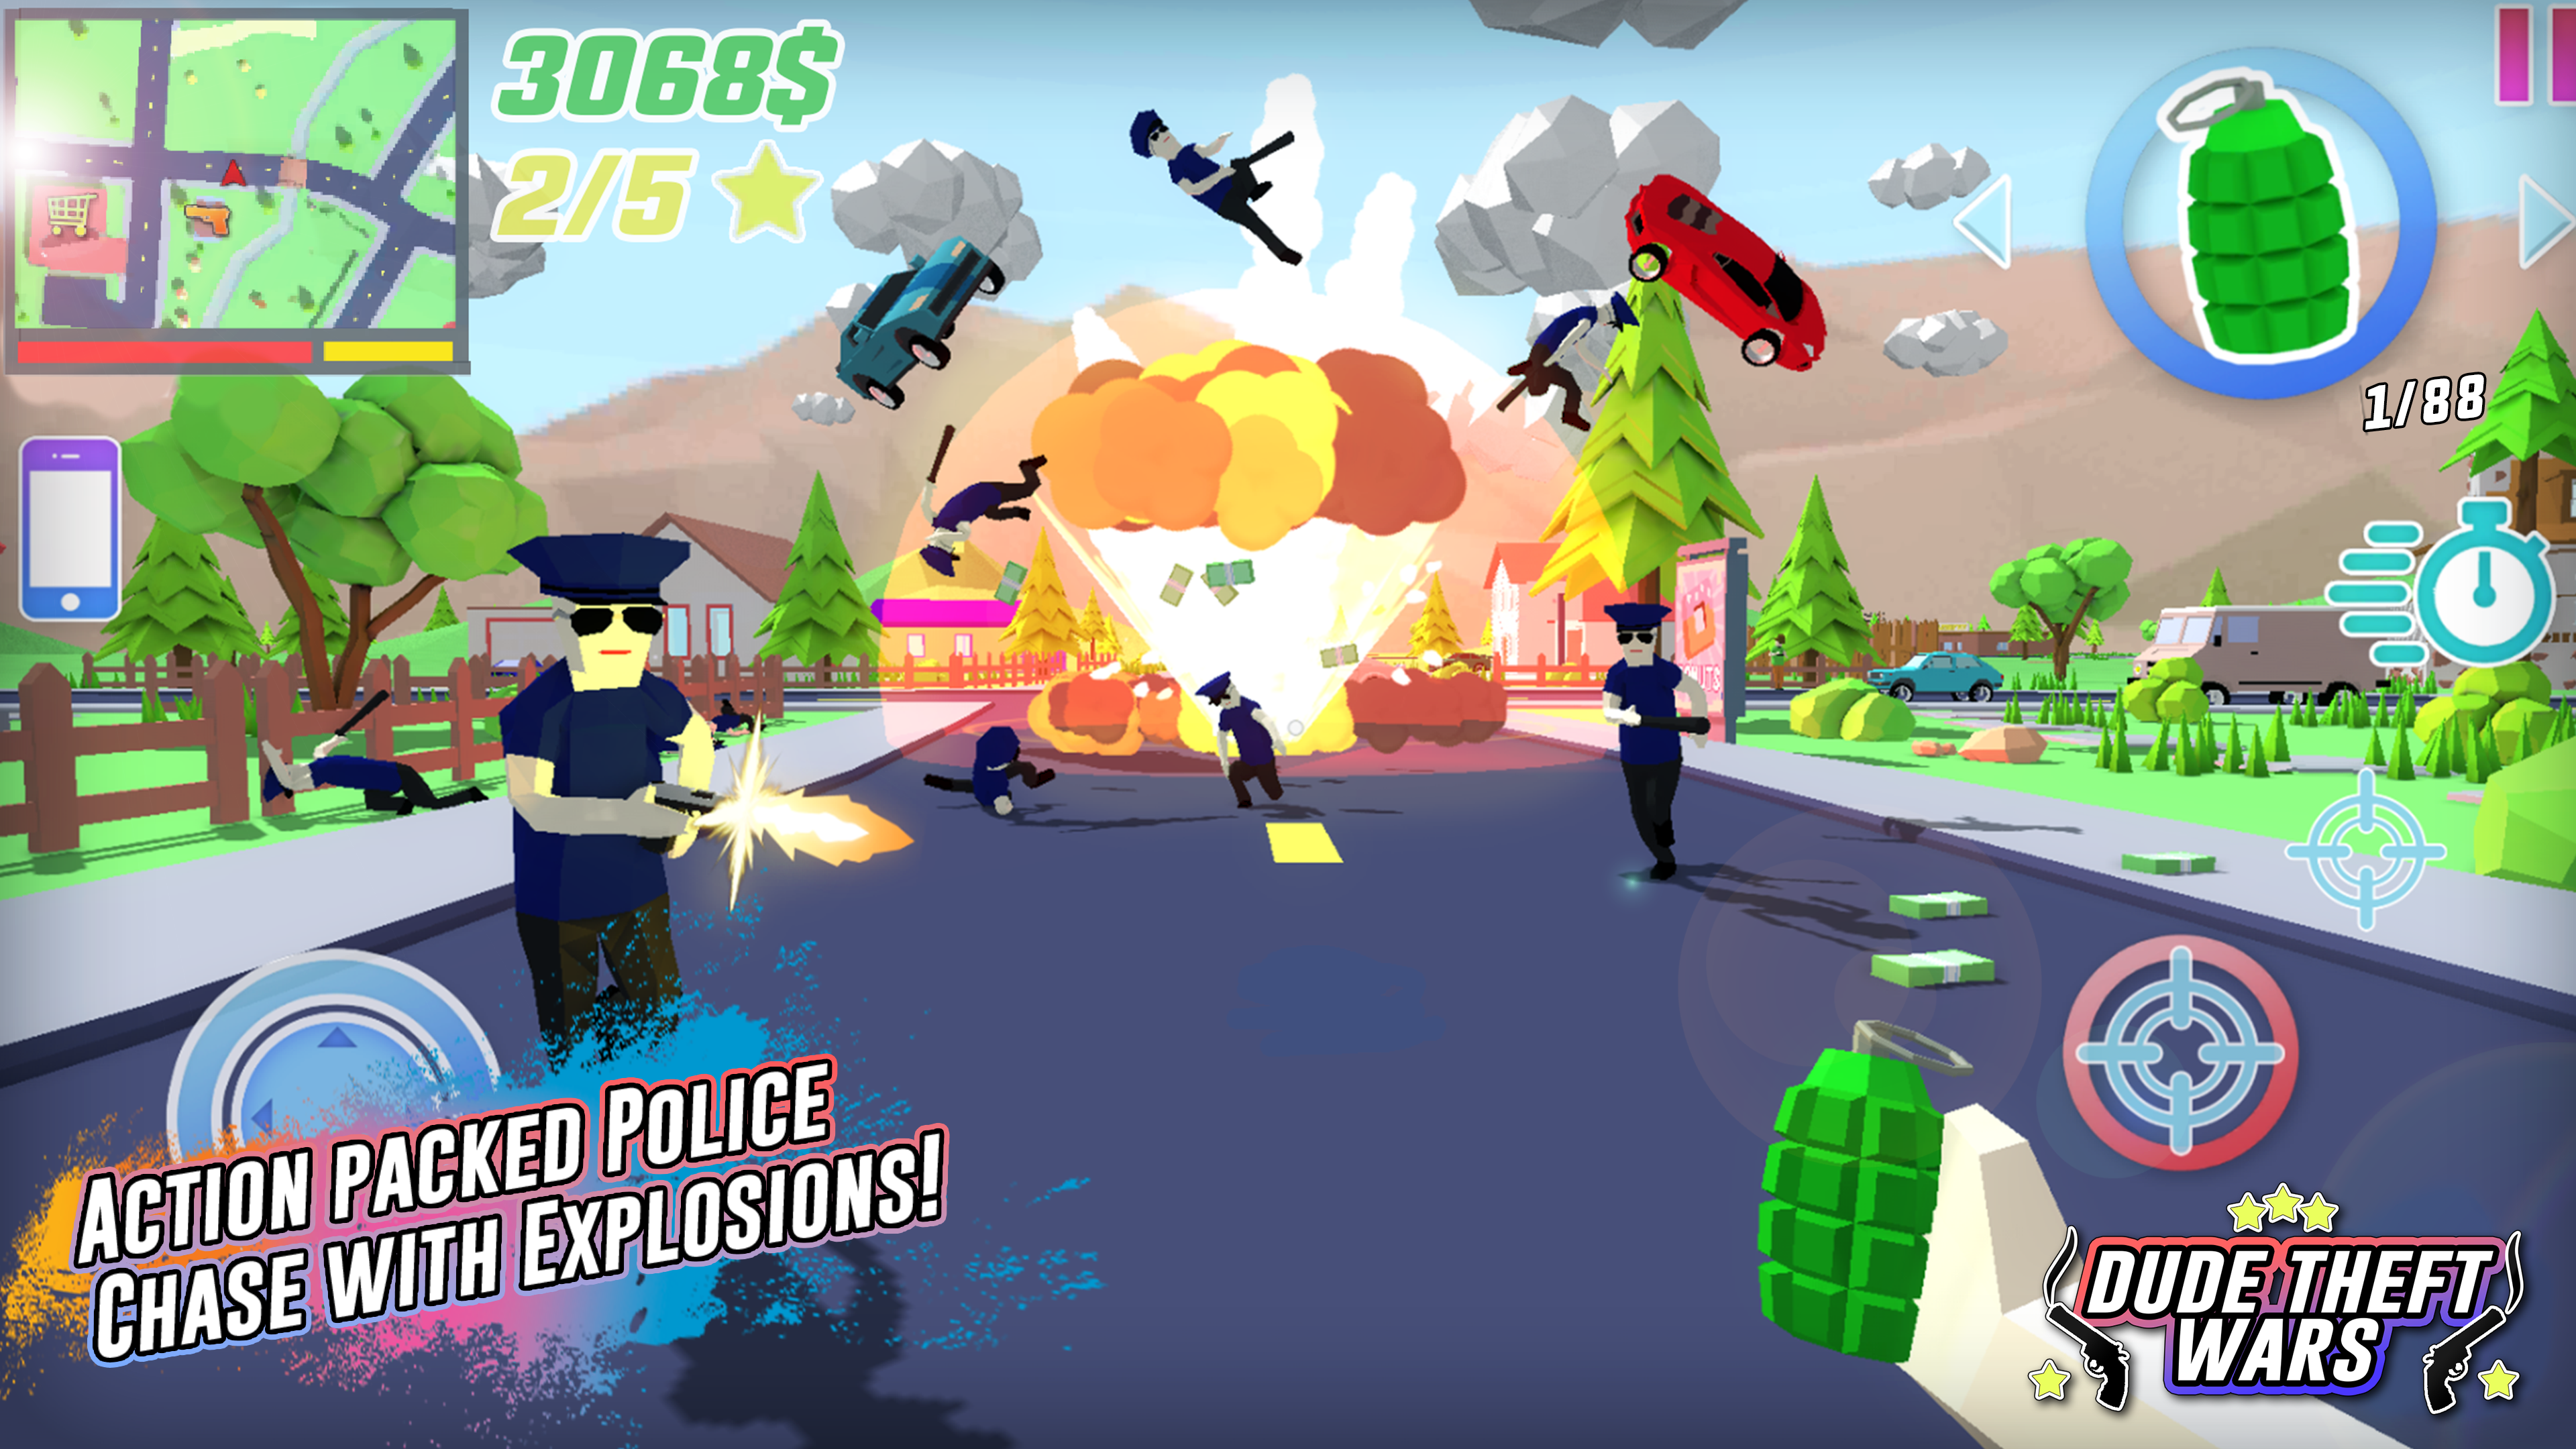 Screenshot 1 of Dude Theft Wars Jeux de tir 0.9.0.9c2